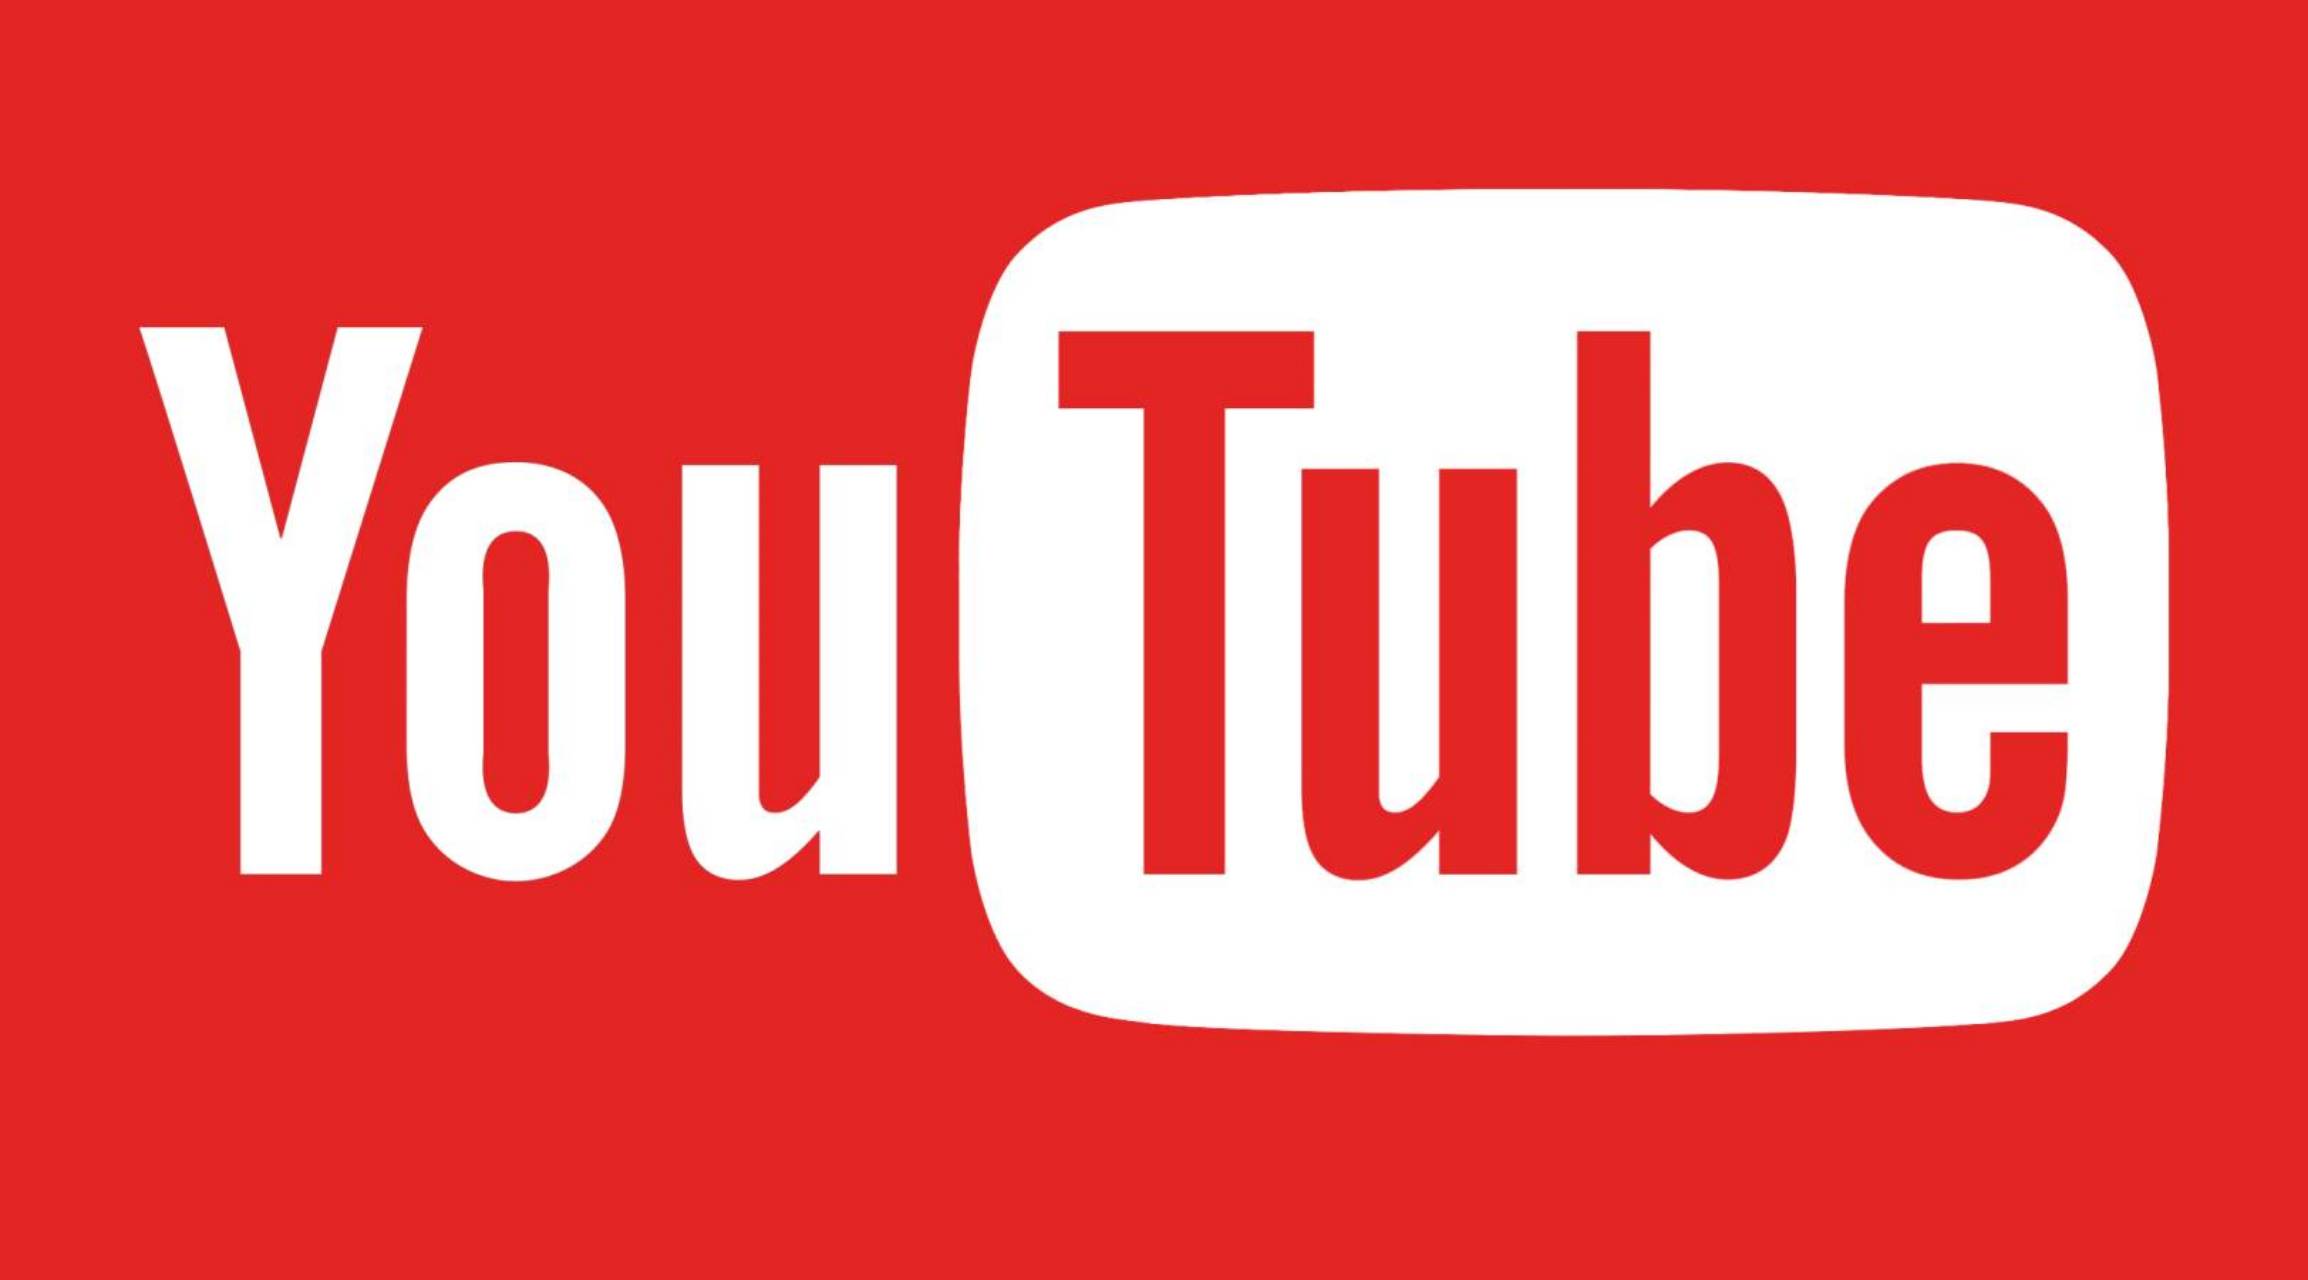 YouTube: Googlen tarjoama uusi päivitys sovellukselle